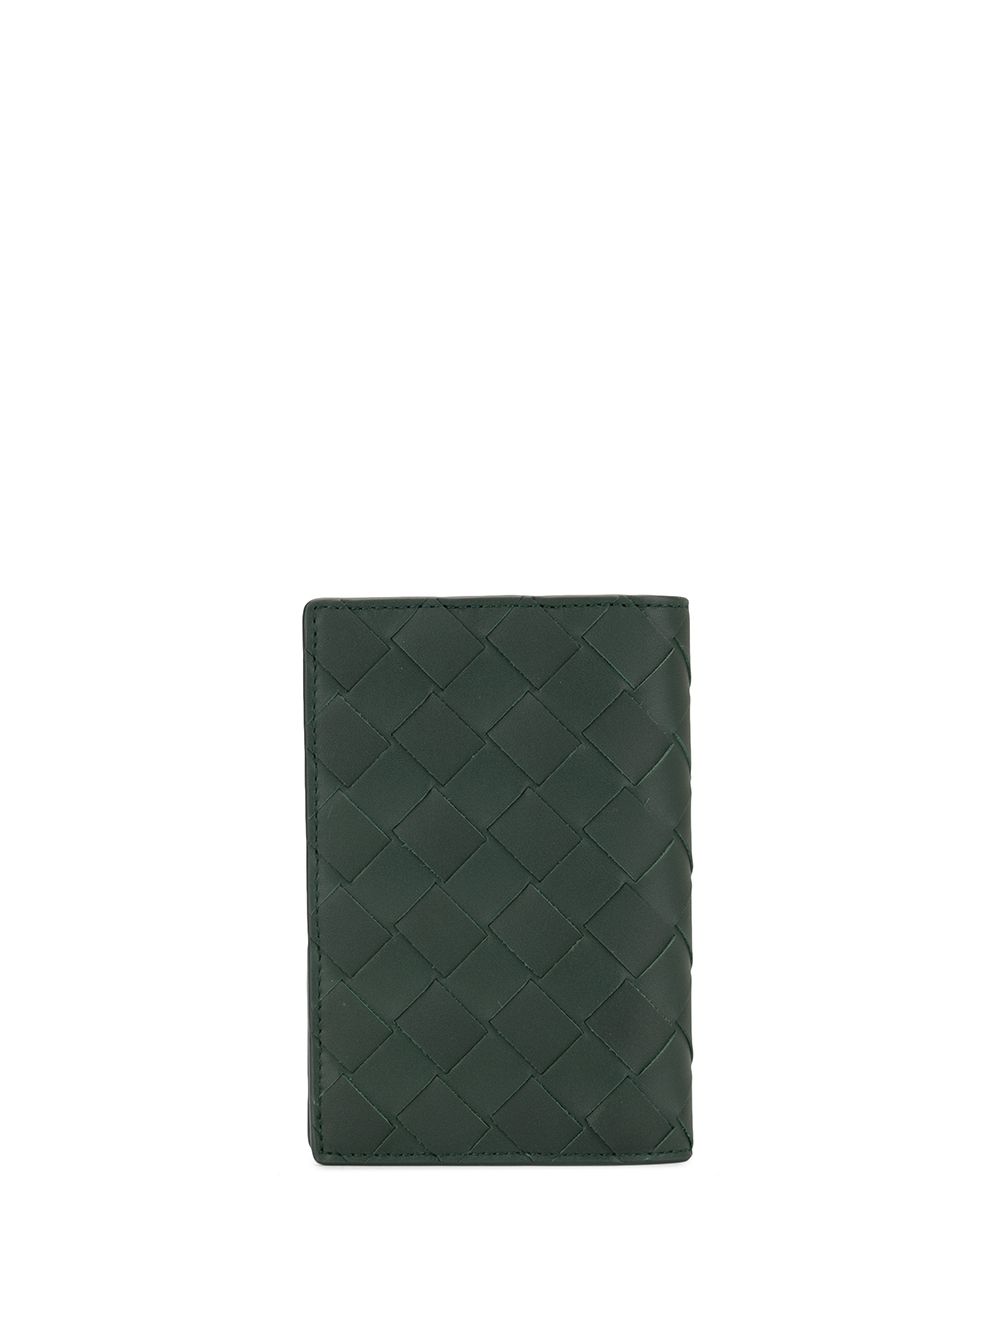 фото Bottega veneta обложка для паспорта с плетением intrecciato